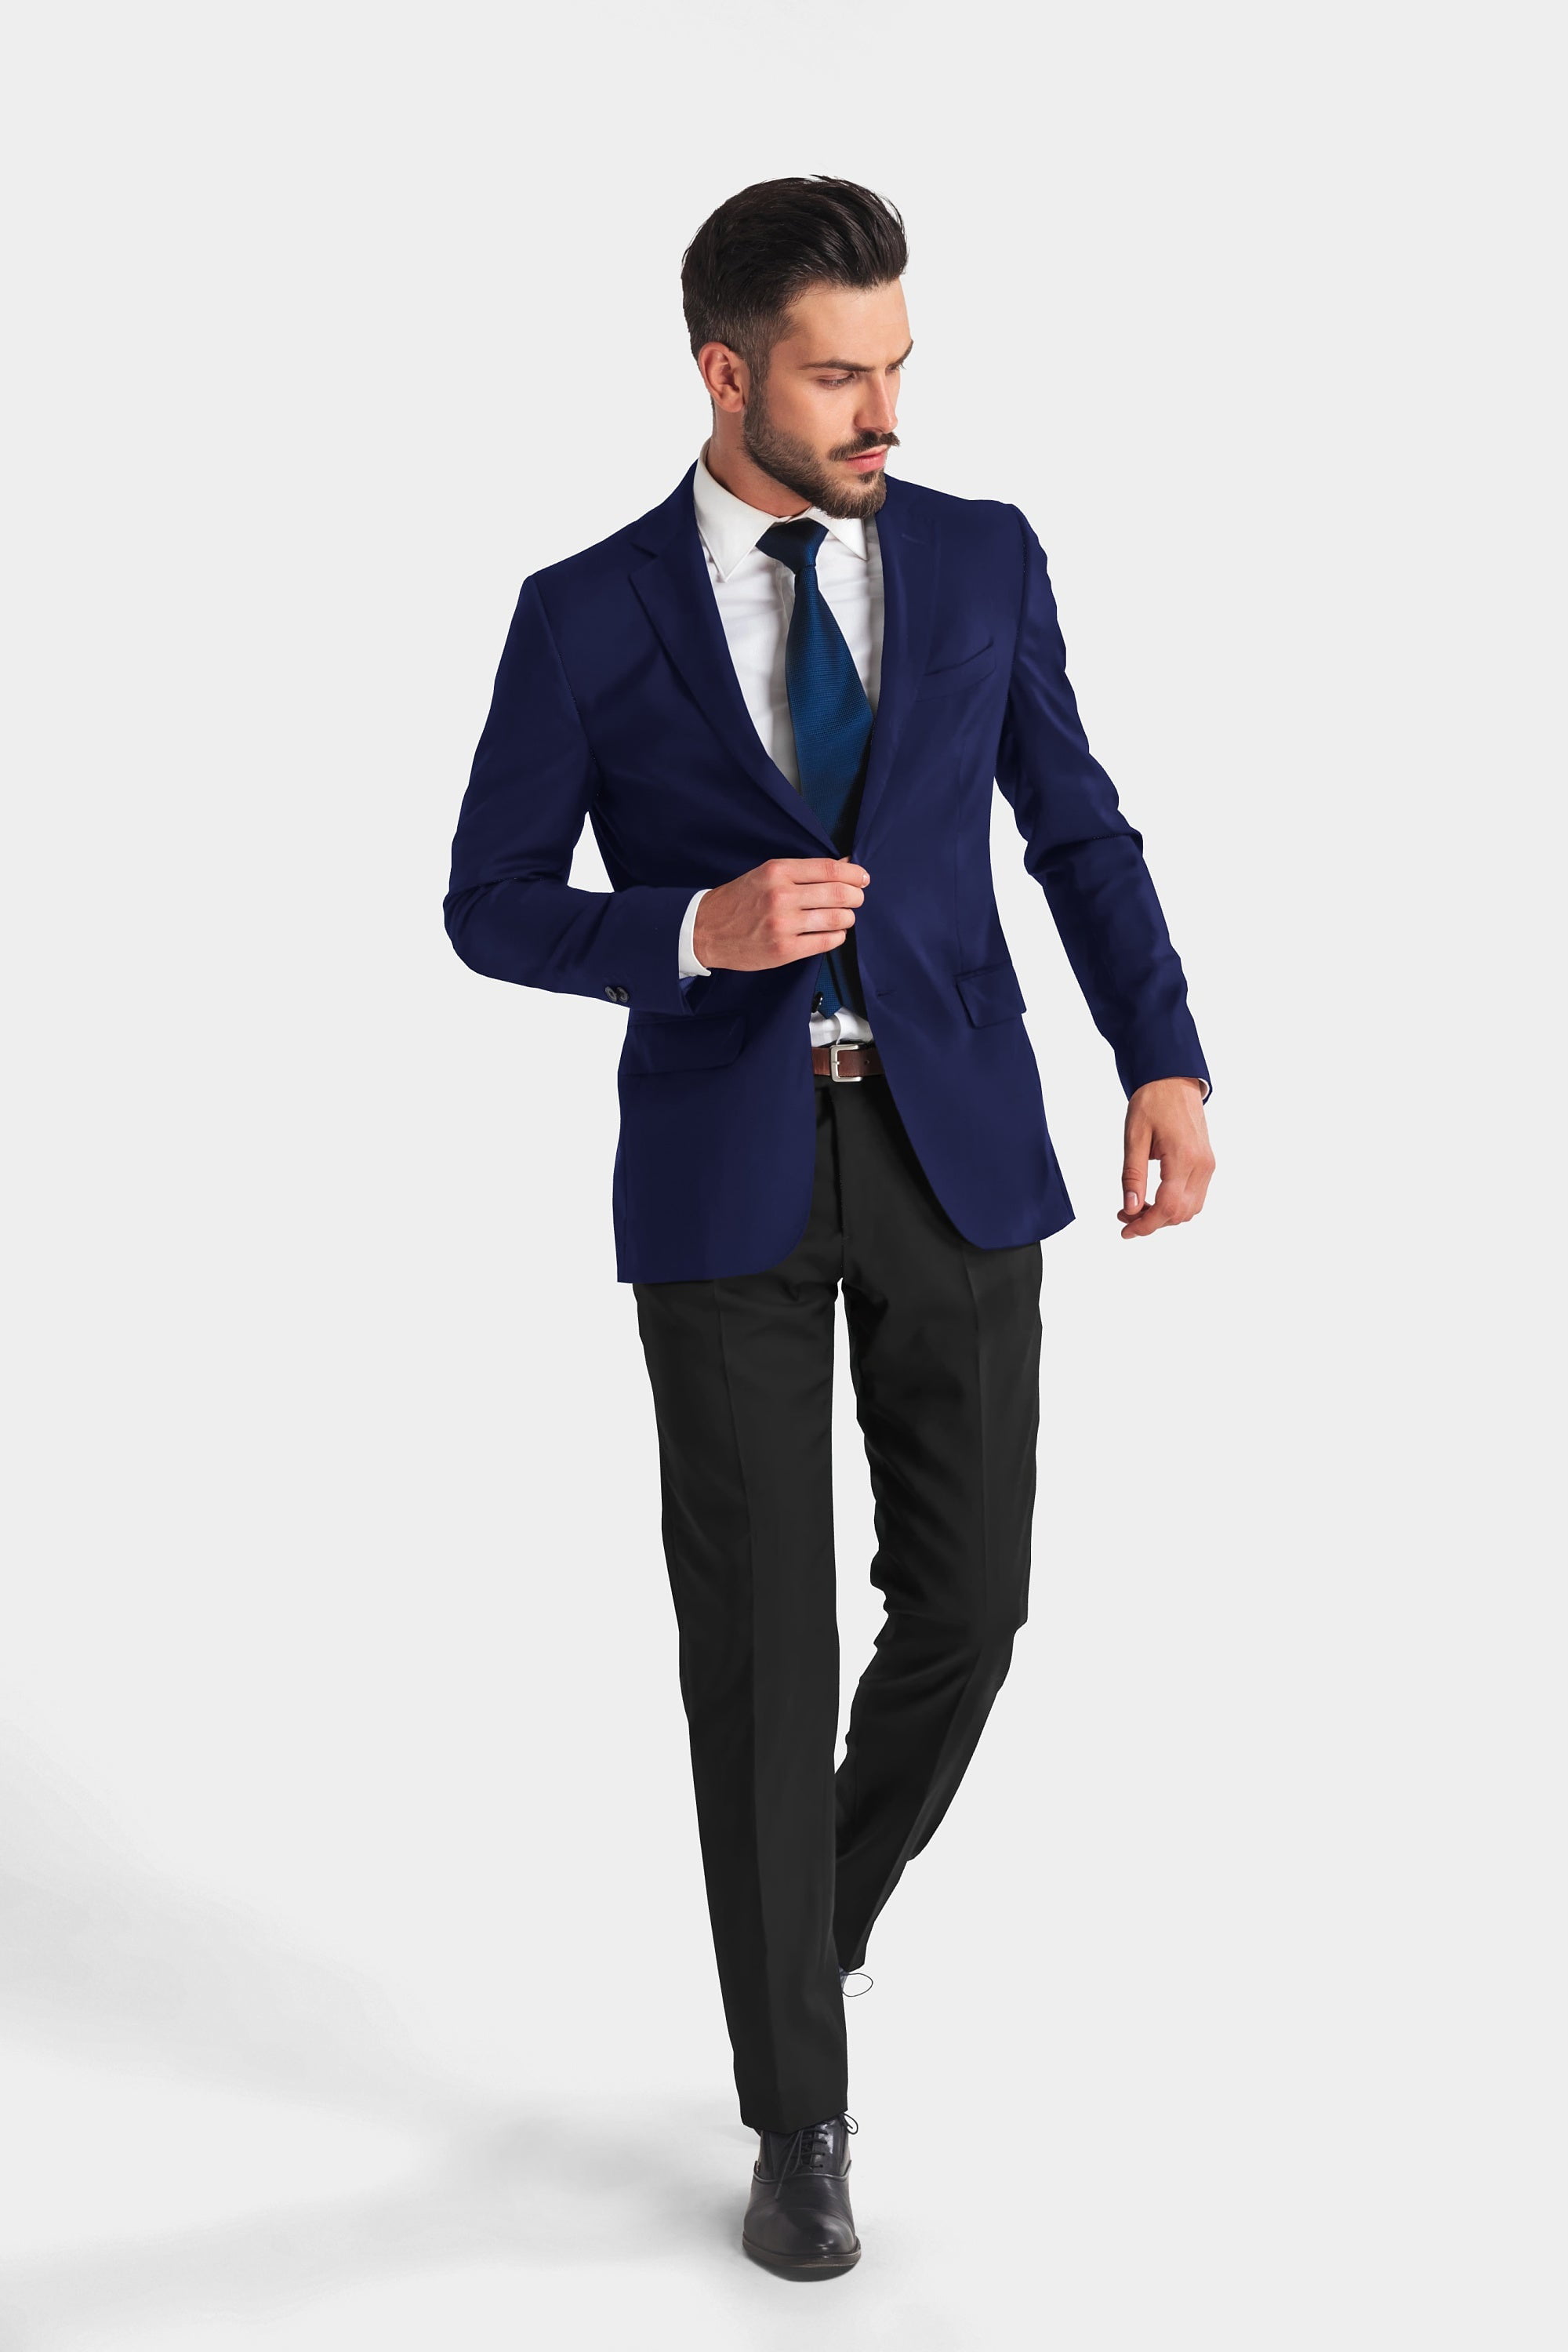 Elina fashion Men's Formal Blazer Jacket Comfort Office Suit